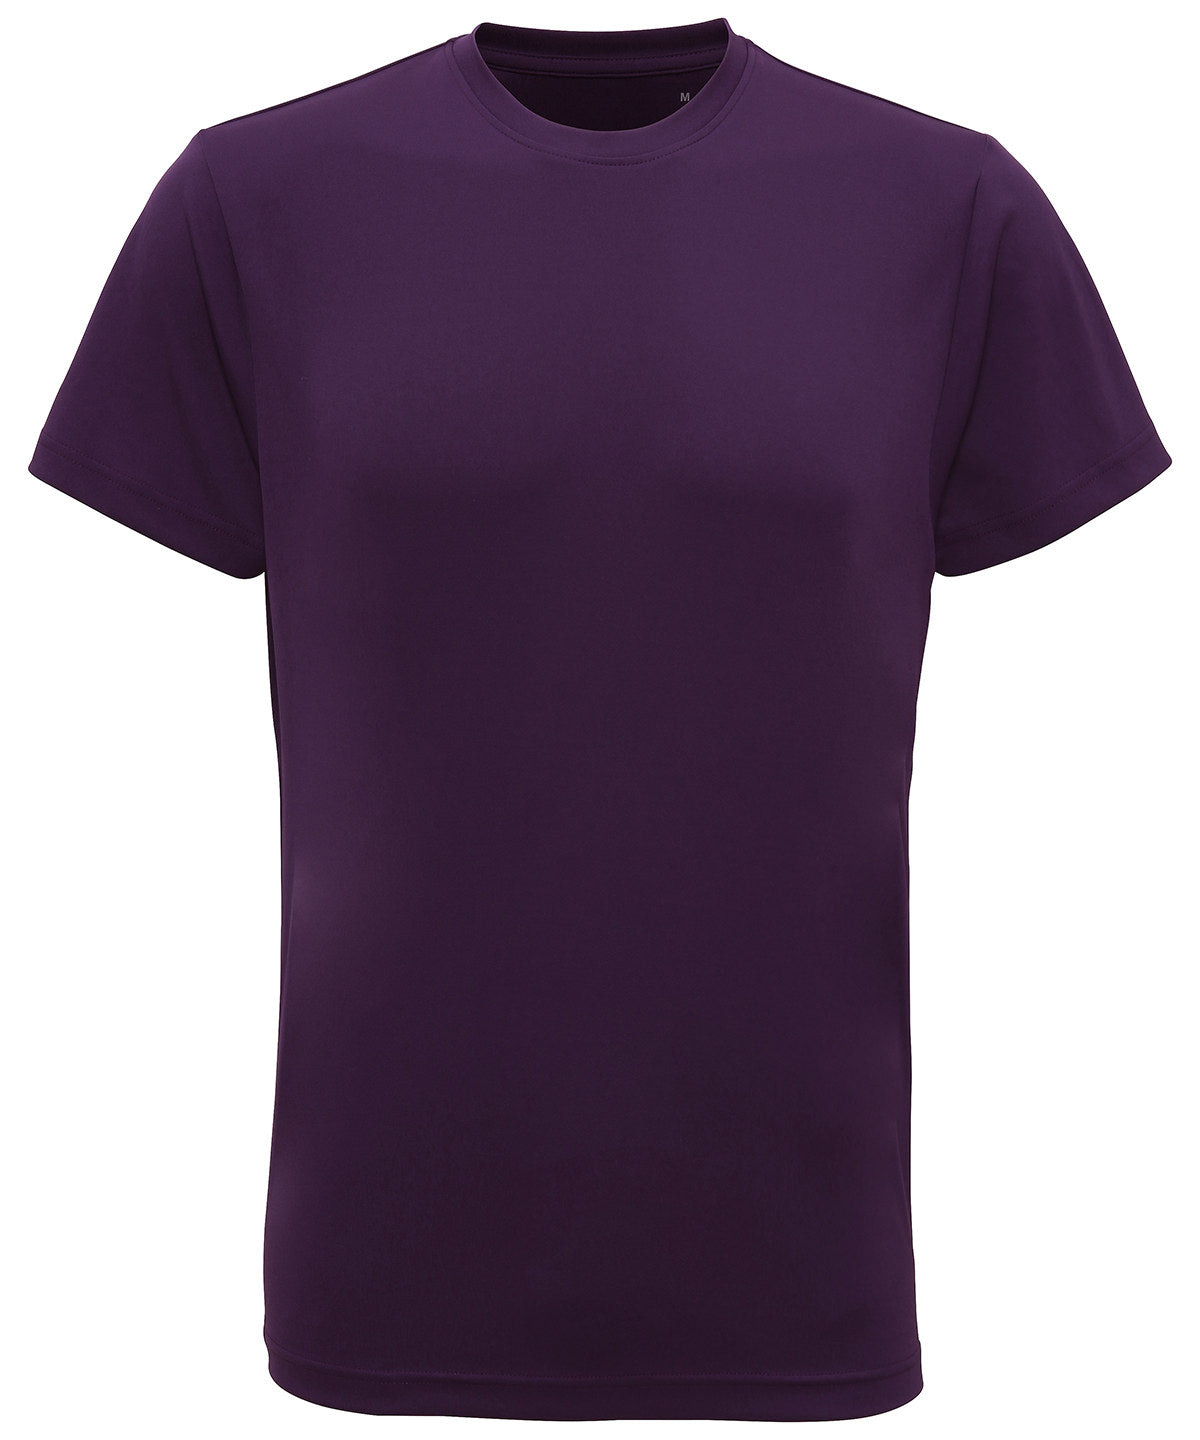 TriDri Performance T-Shirt Bright Purple